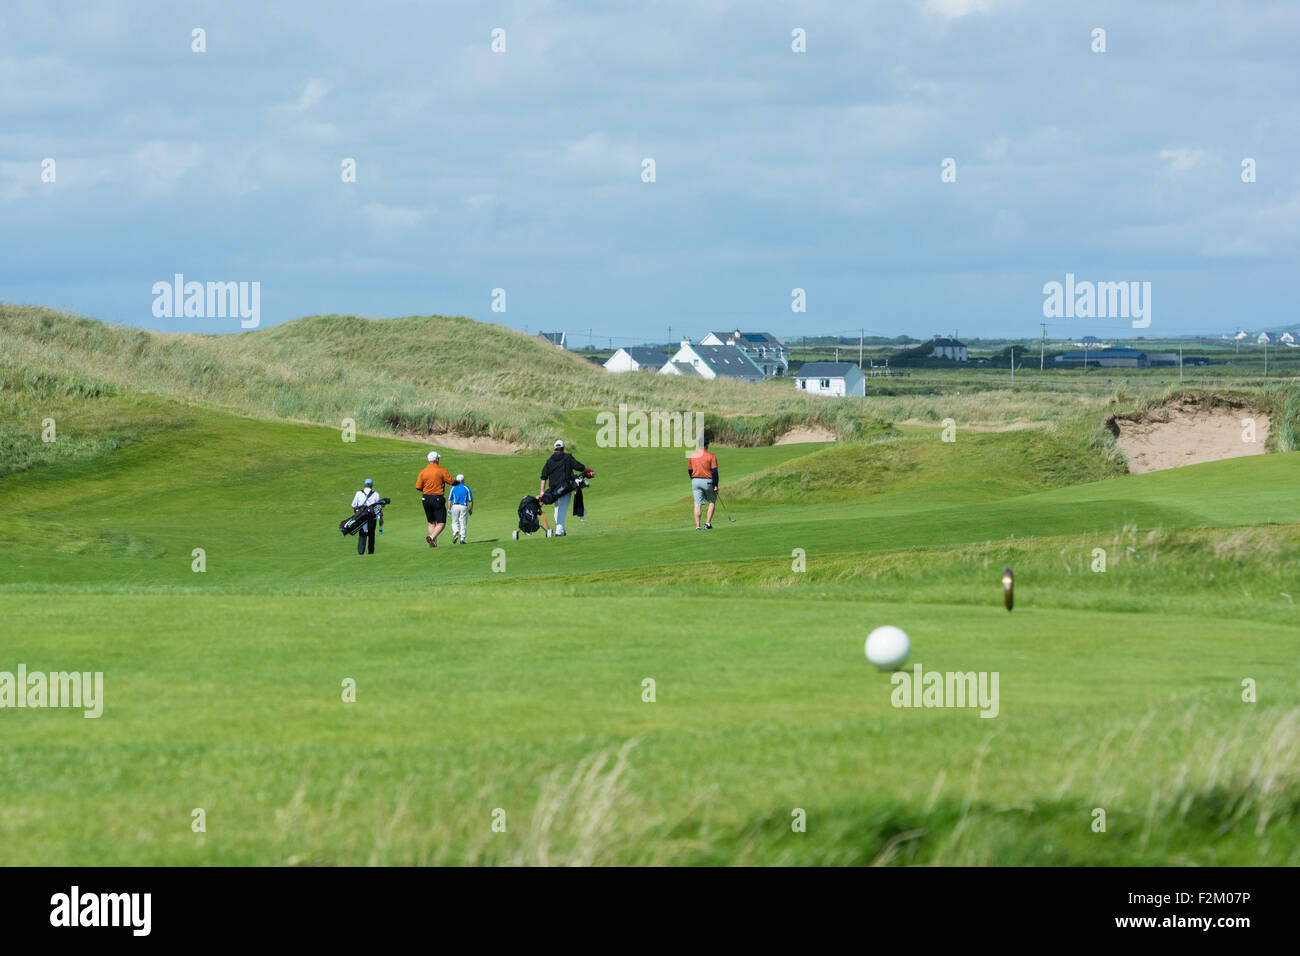 Trump Golf Resort et Hôtel à Doonbeg dans le comté de Clare le long de la manière sauvage de l'Atlantique sur la côte ouest de l'Irlande Banque D'Images